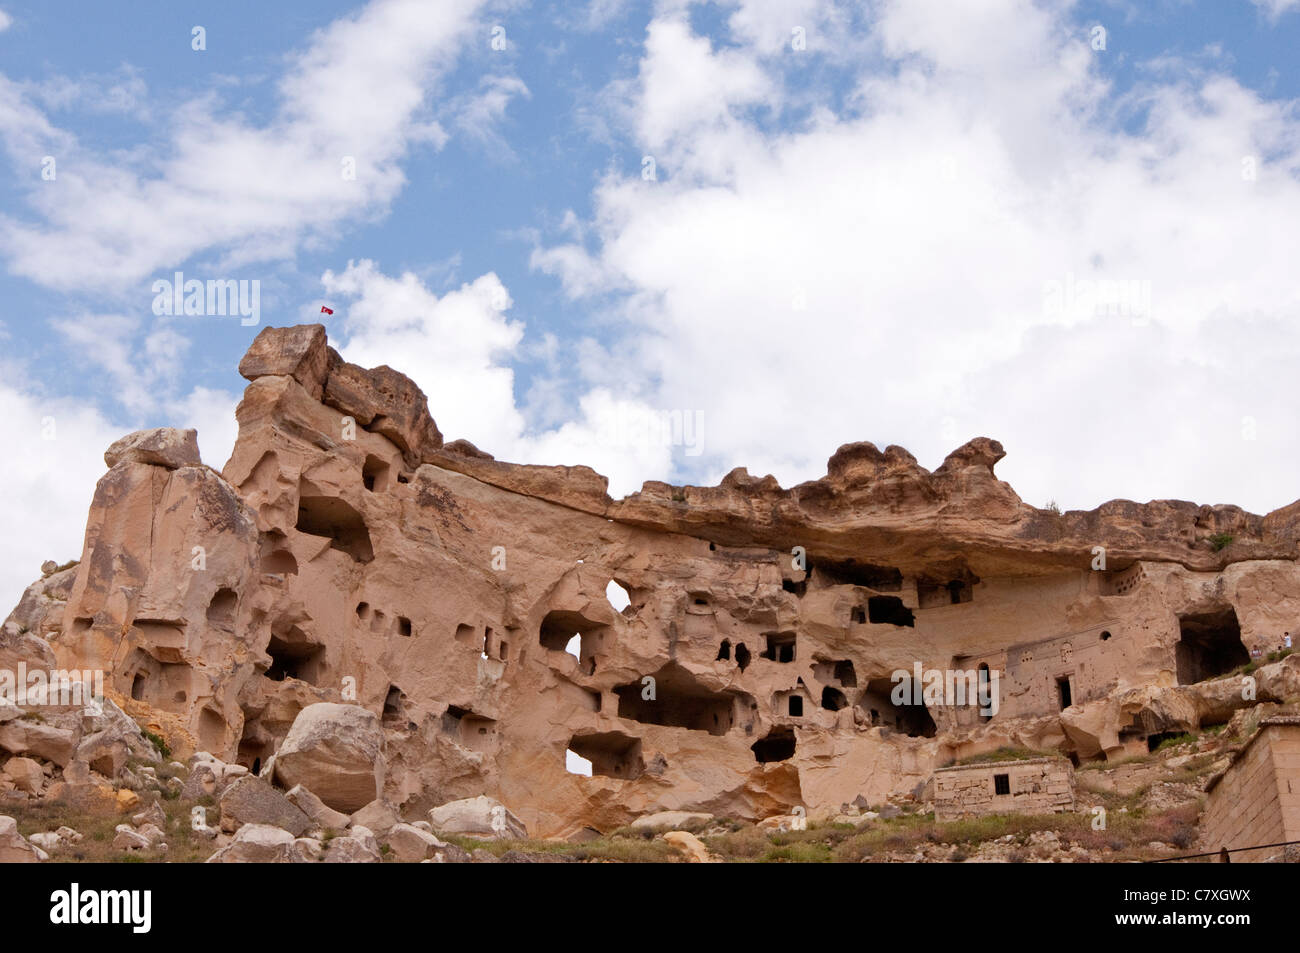 Rock formation avec portes, fenêtres, Çavusin, Cappadoce, Turquie Banque D'Images